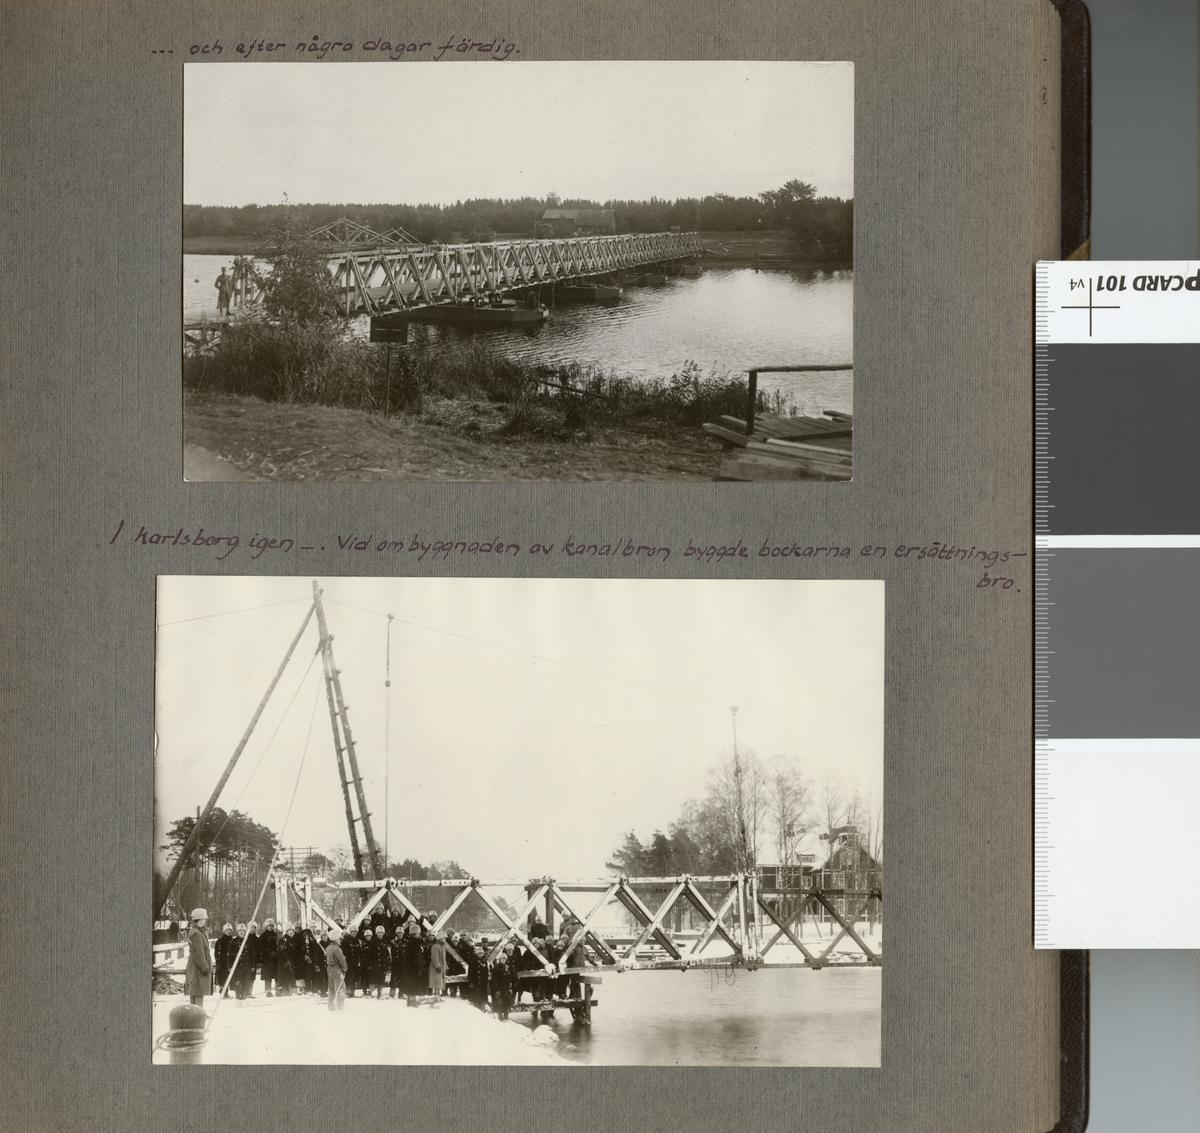 Text i fotoalbum: "I Karlsborg igen. Vid byggnaden av kanalbron byggde bockarna en ersättningsbro".